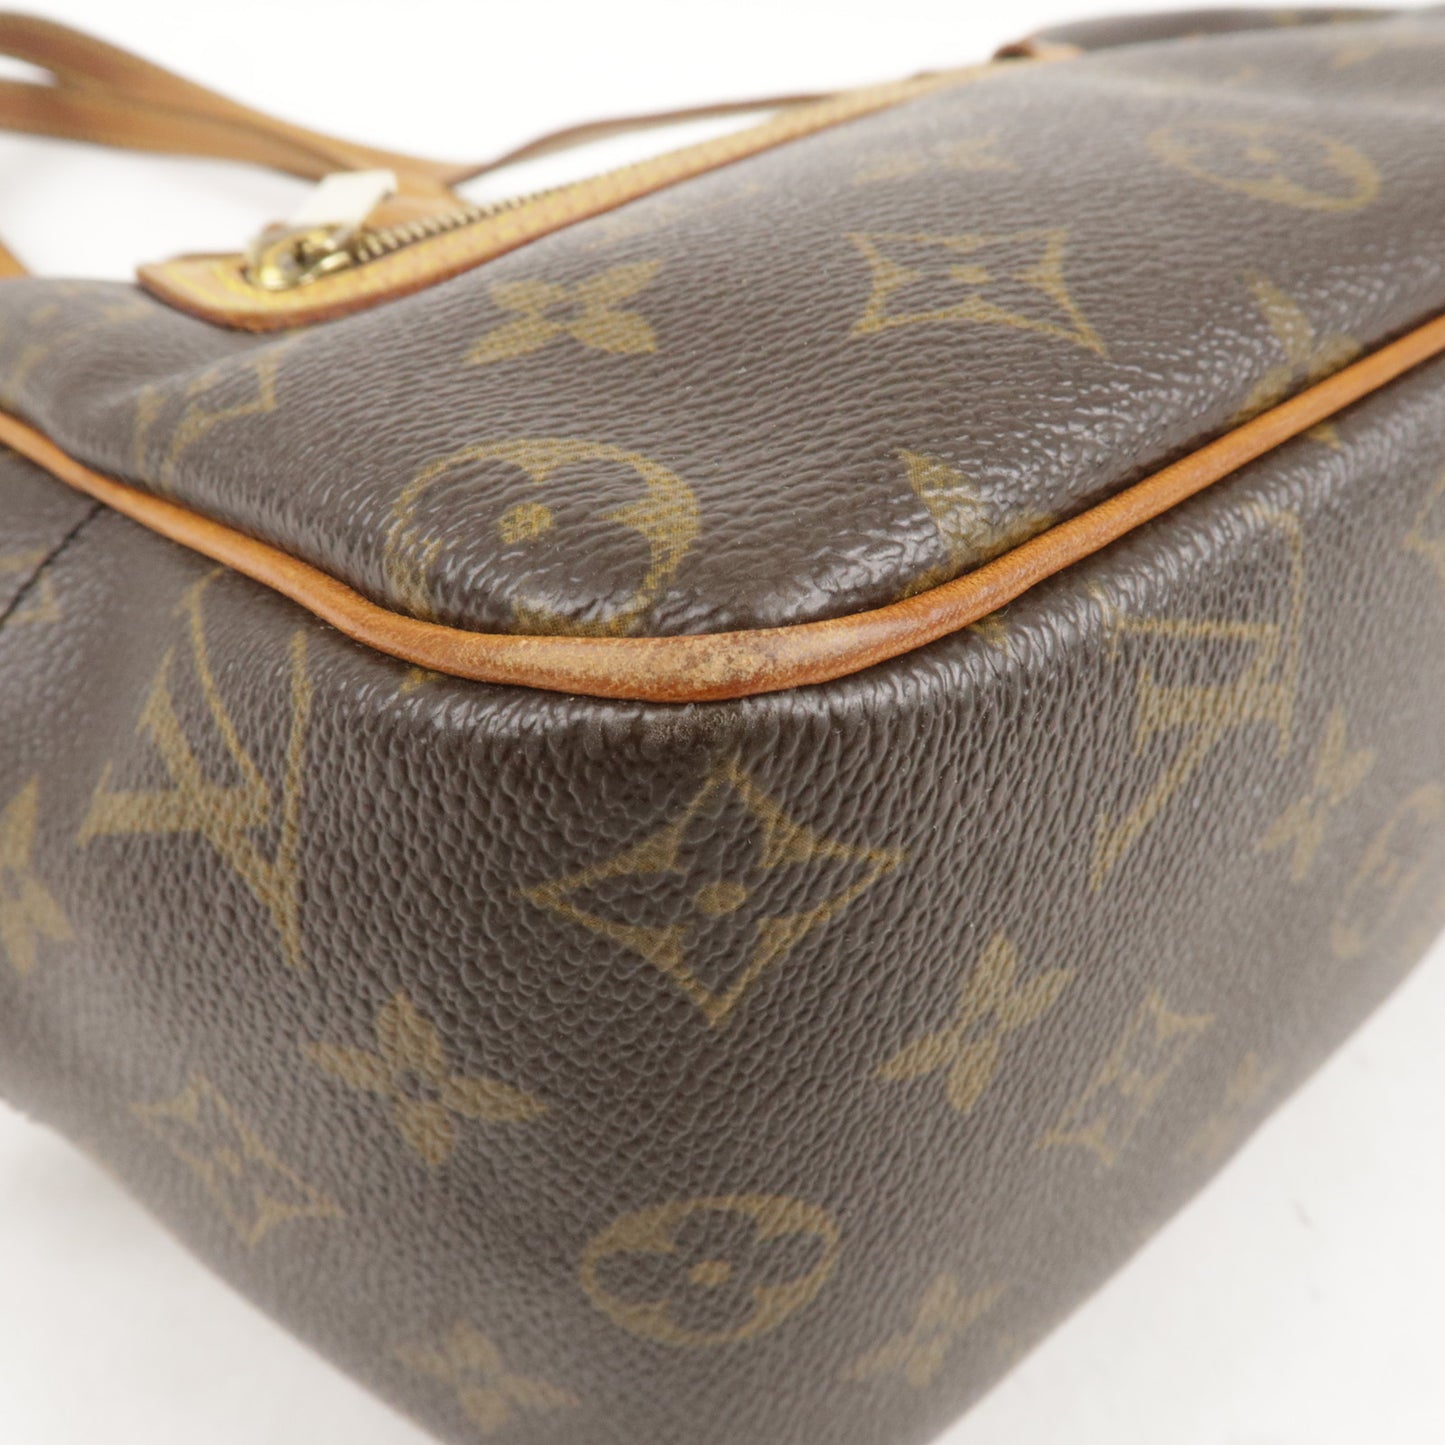 Louis - Bag - M51182 – dct - Vuitton - Shoulder - Monogram - Bag